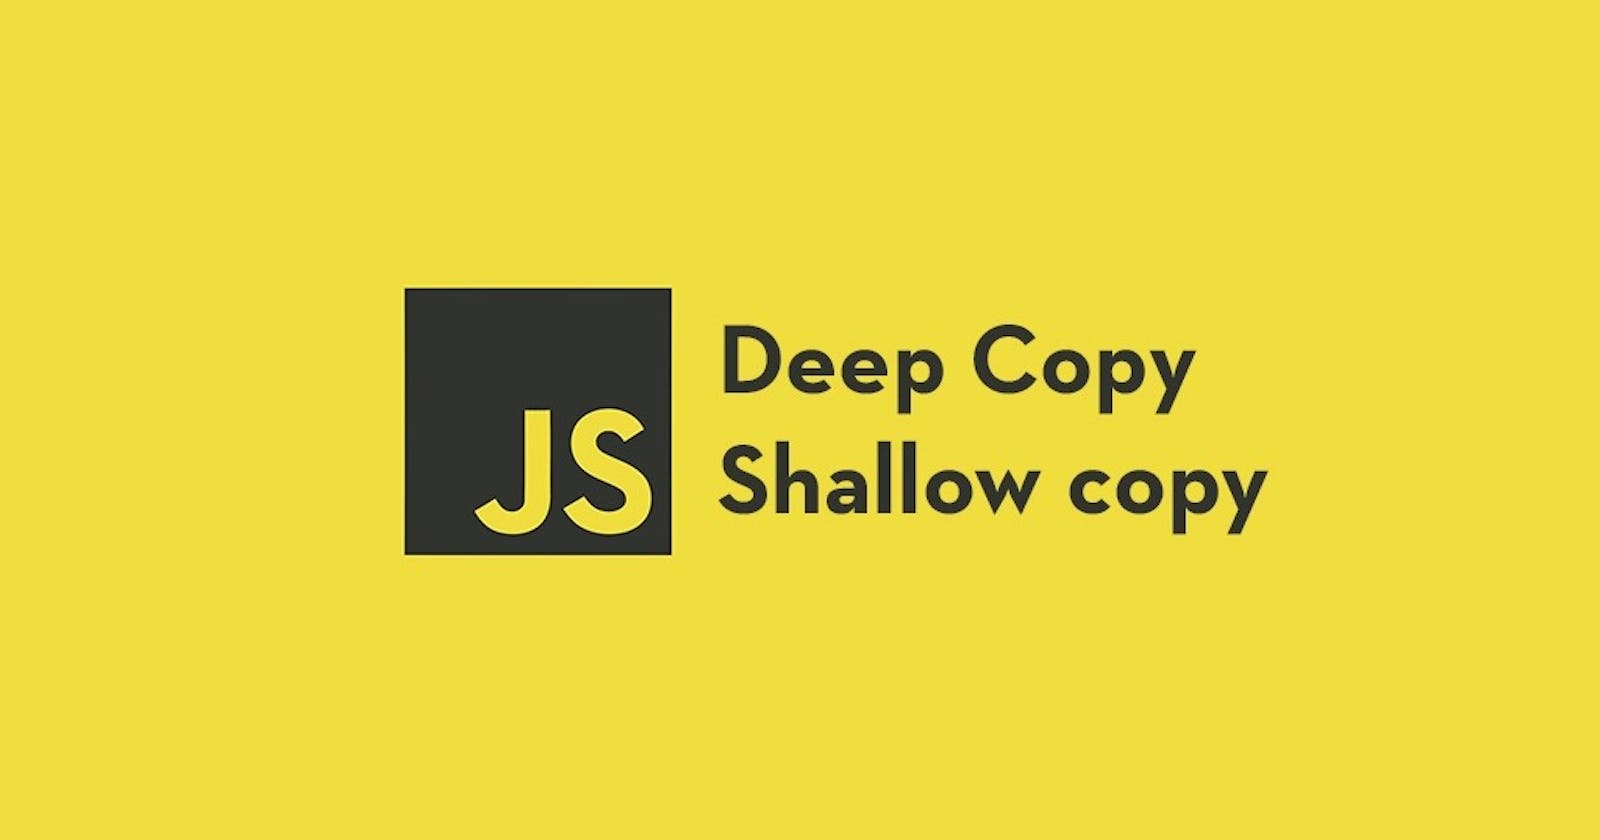 Shallow Copy vs Deep Copy